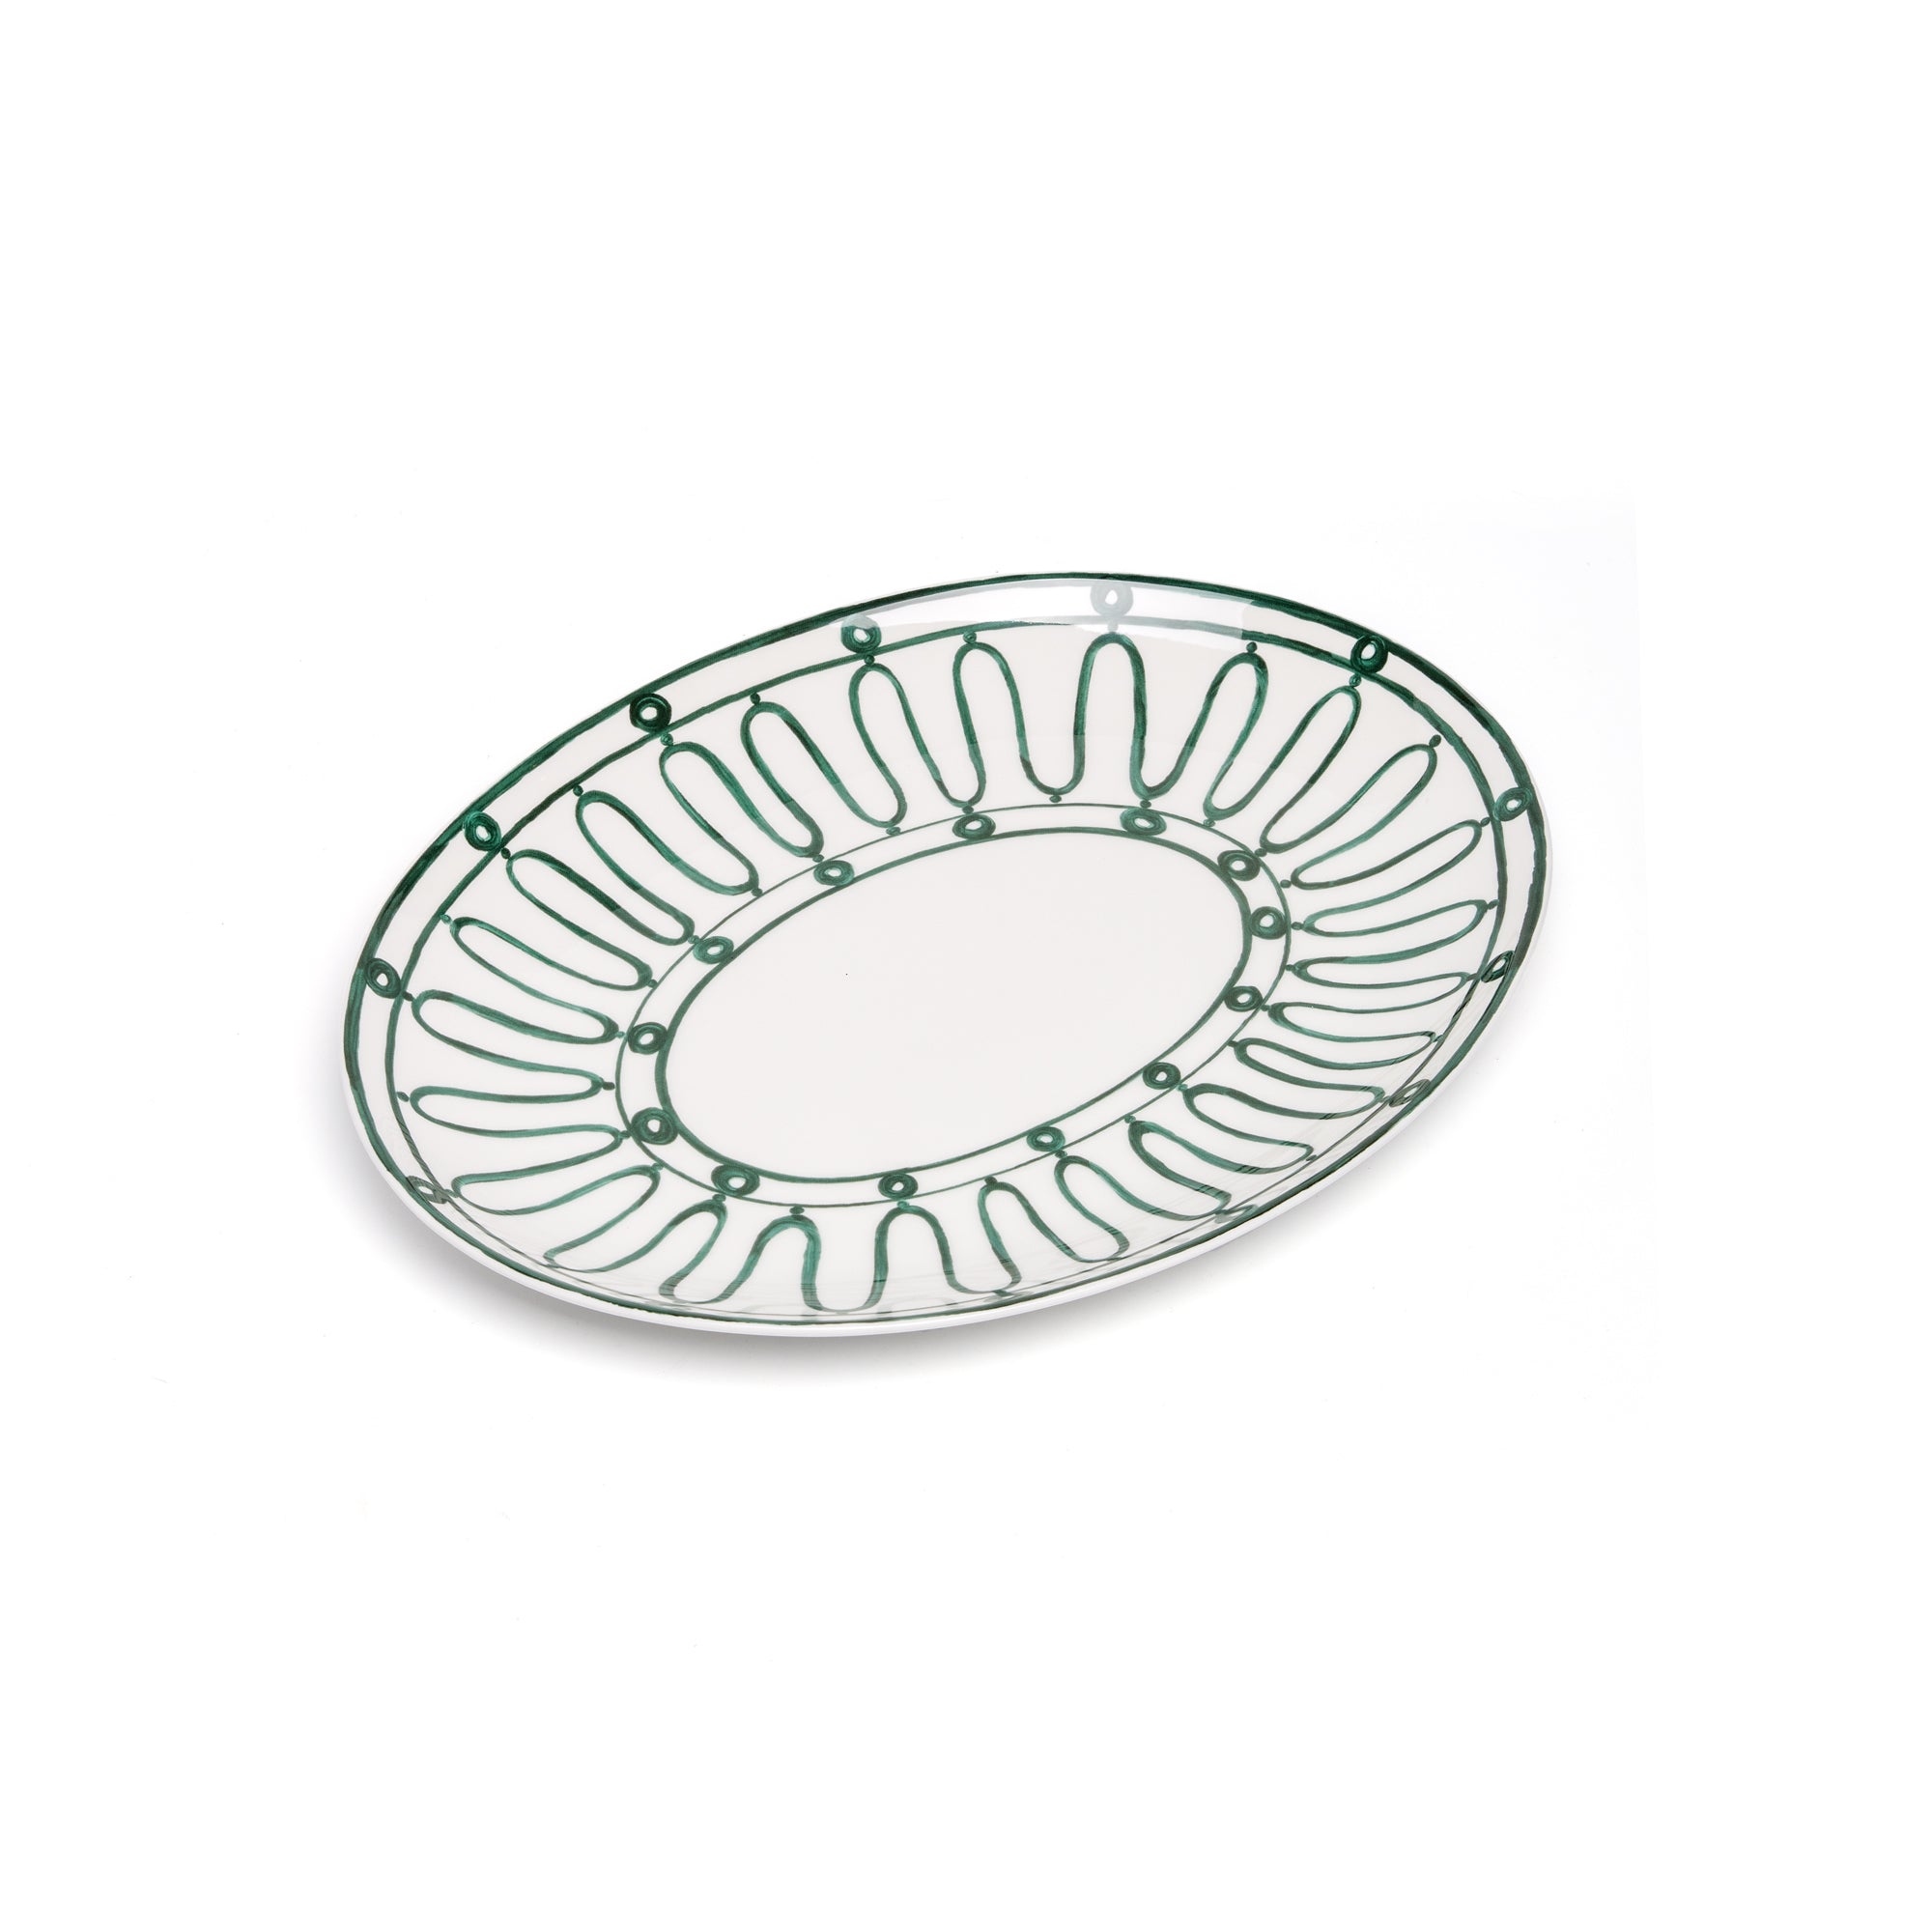 Kyma Serving Platter 36cm - Green/White